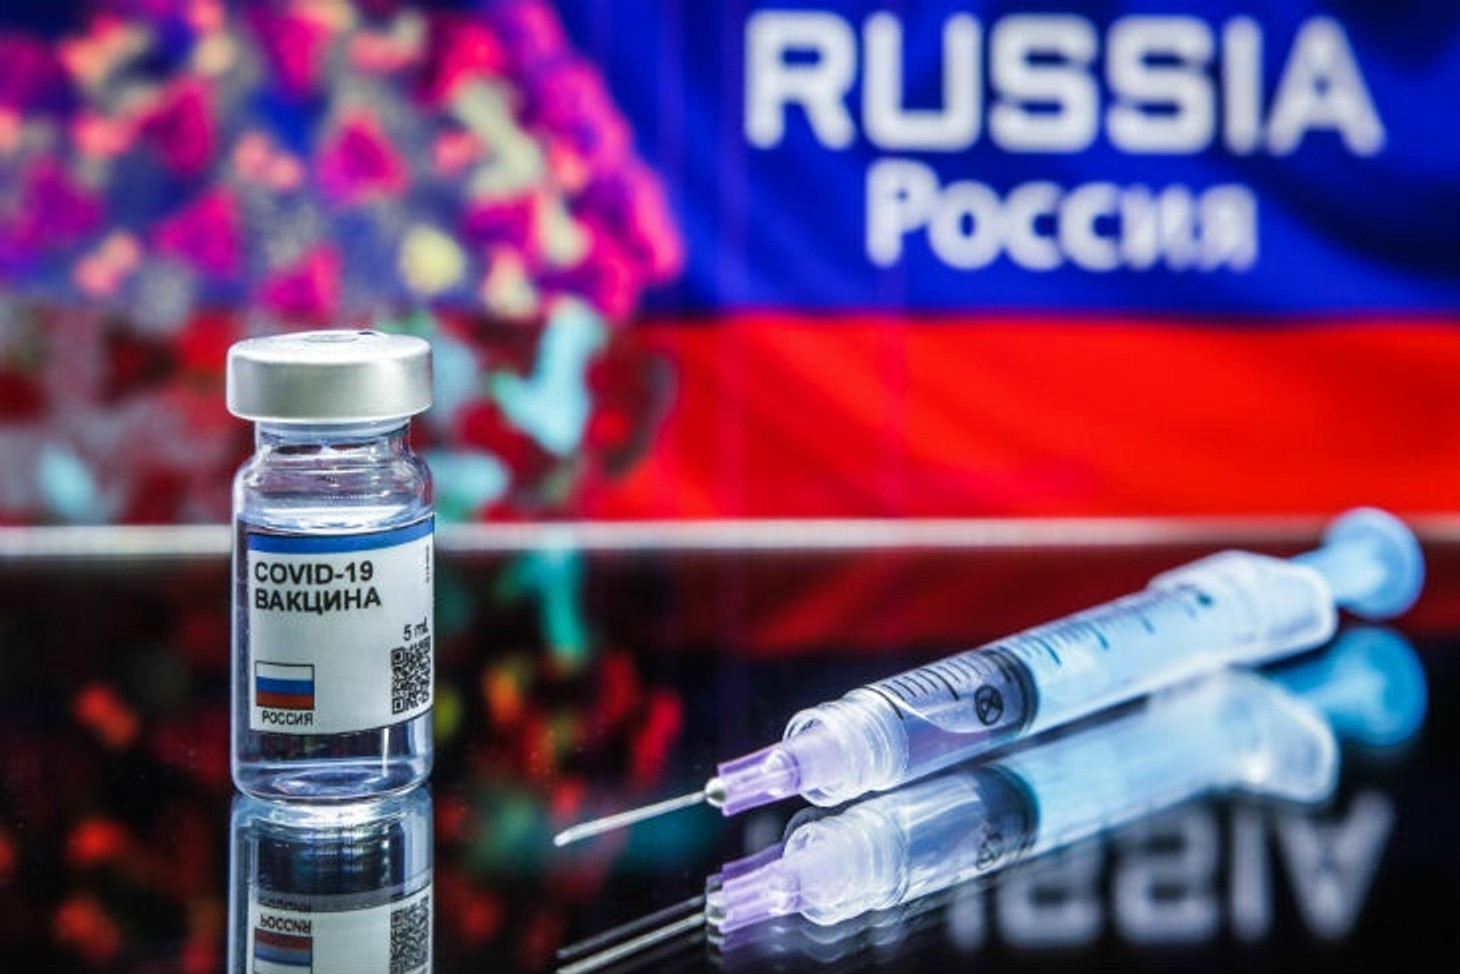 Більше 100 тисяч росіян щеплено вакциною від коронавируса «Супутник V» - МОЗ